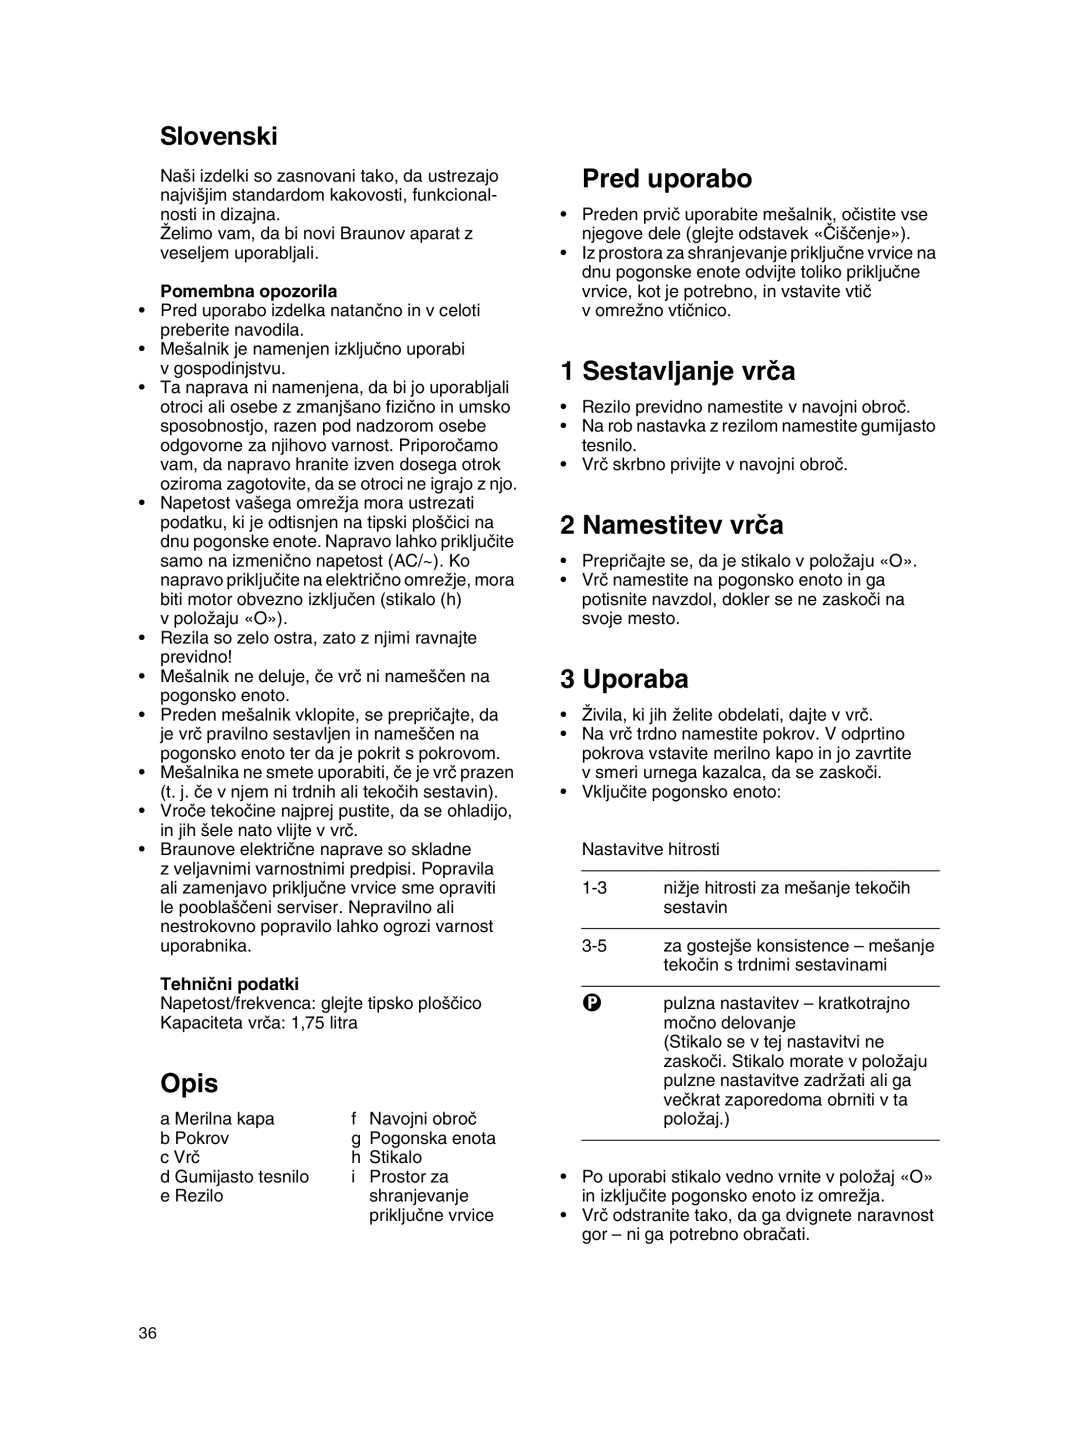 Braun MX 2050 BLACK manual Slovenski, Pred uporabo, Sestavljanje vrãa, Namestitev vrãa, Uporaba, Pomembna opozorila, Opis 